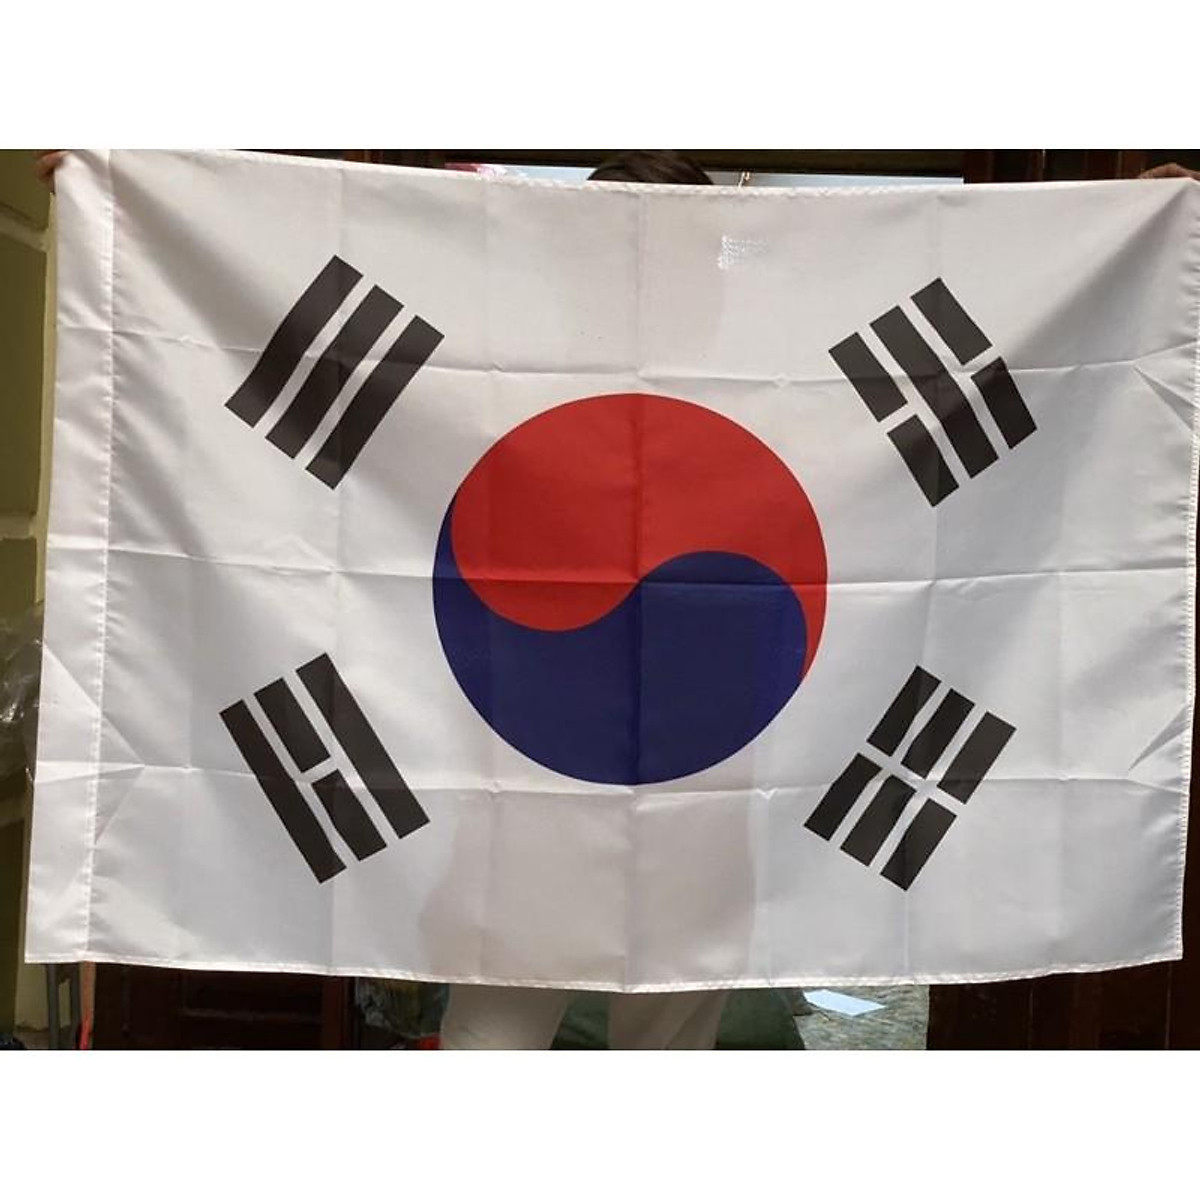 Cờ Hàn quốc, cờ các nước theo yêu cầu - Trang trí nhà cửa khác